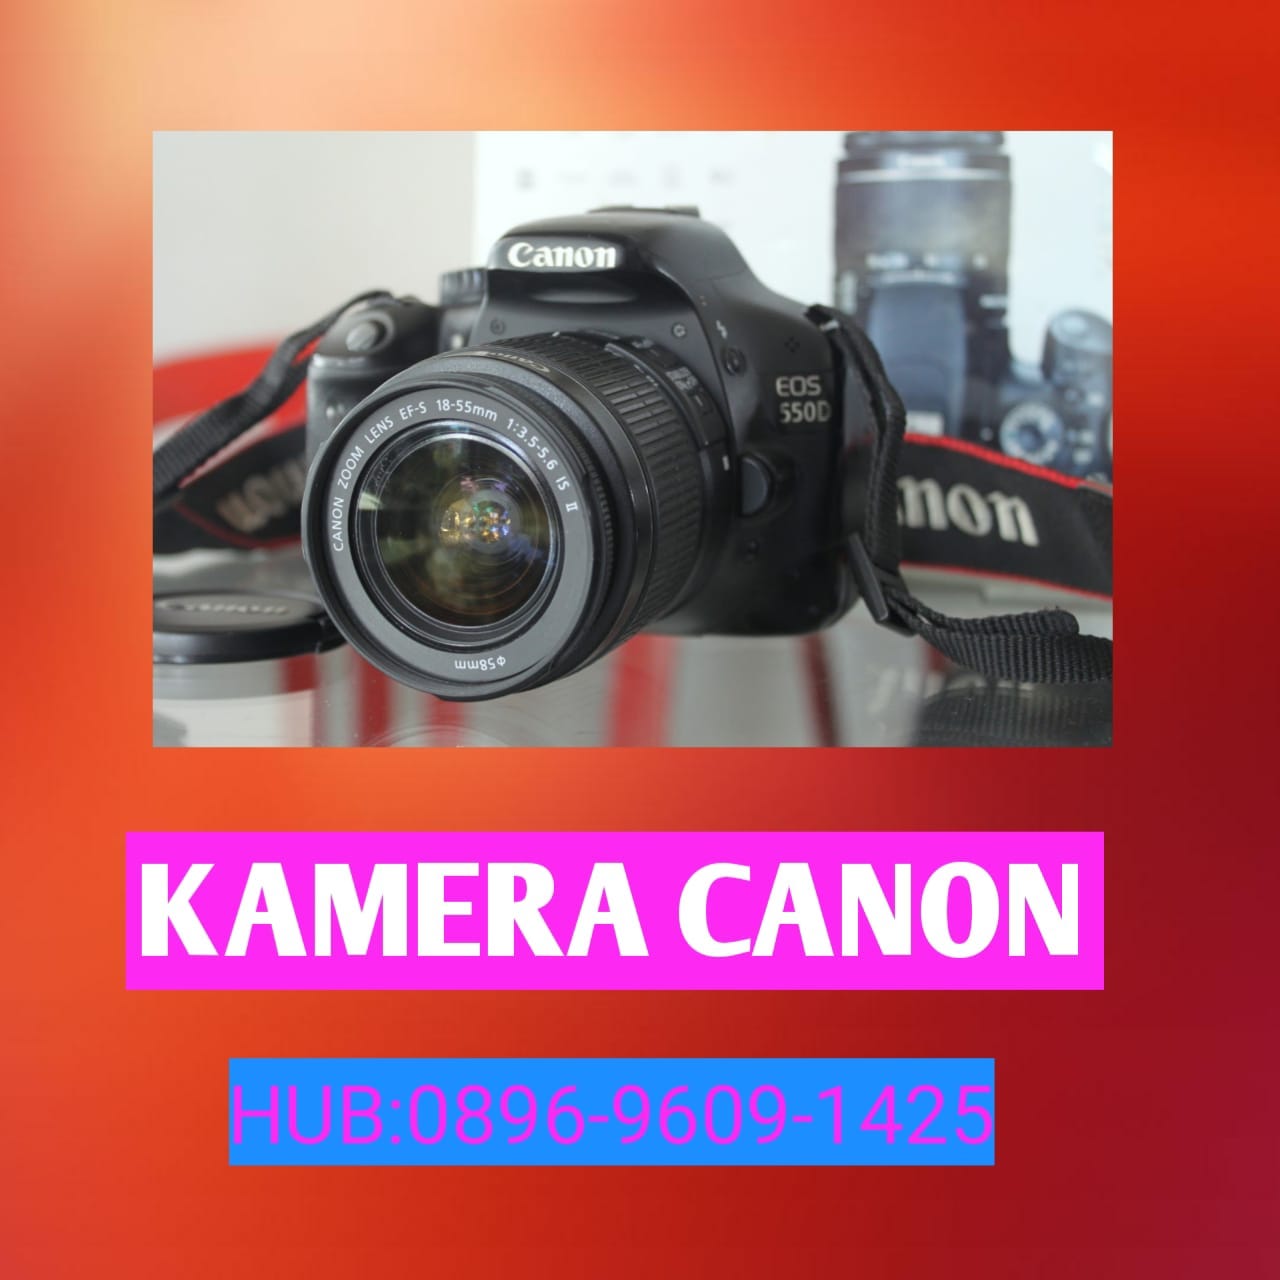 kamera dslr murah terbaik canon eos 550D kit BANDUNG - Agen pembersih  kloset paling ampuh - Medium